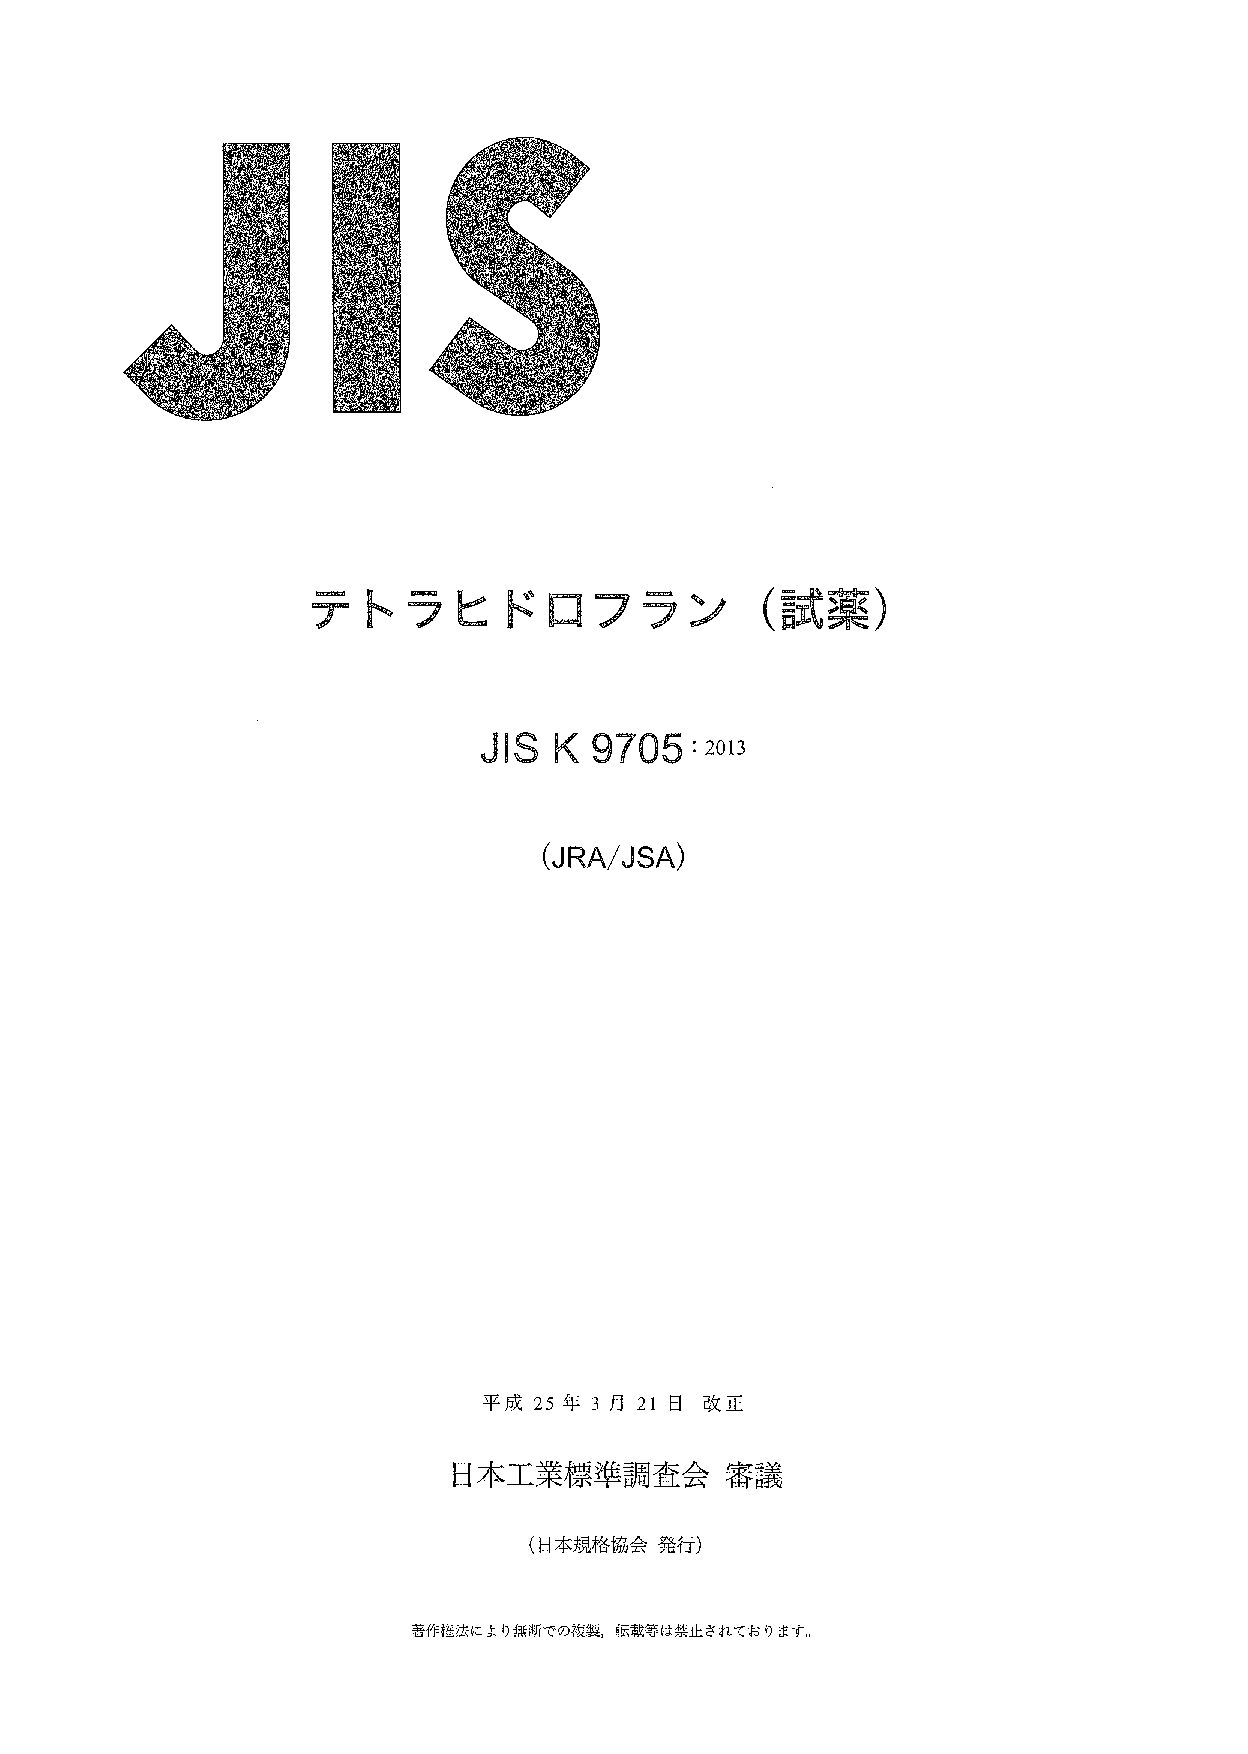 JIS K 9705:2013封面图